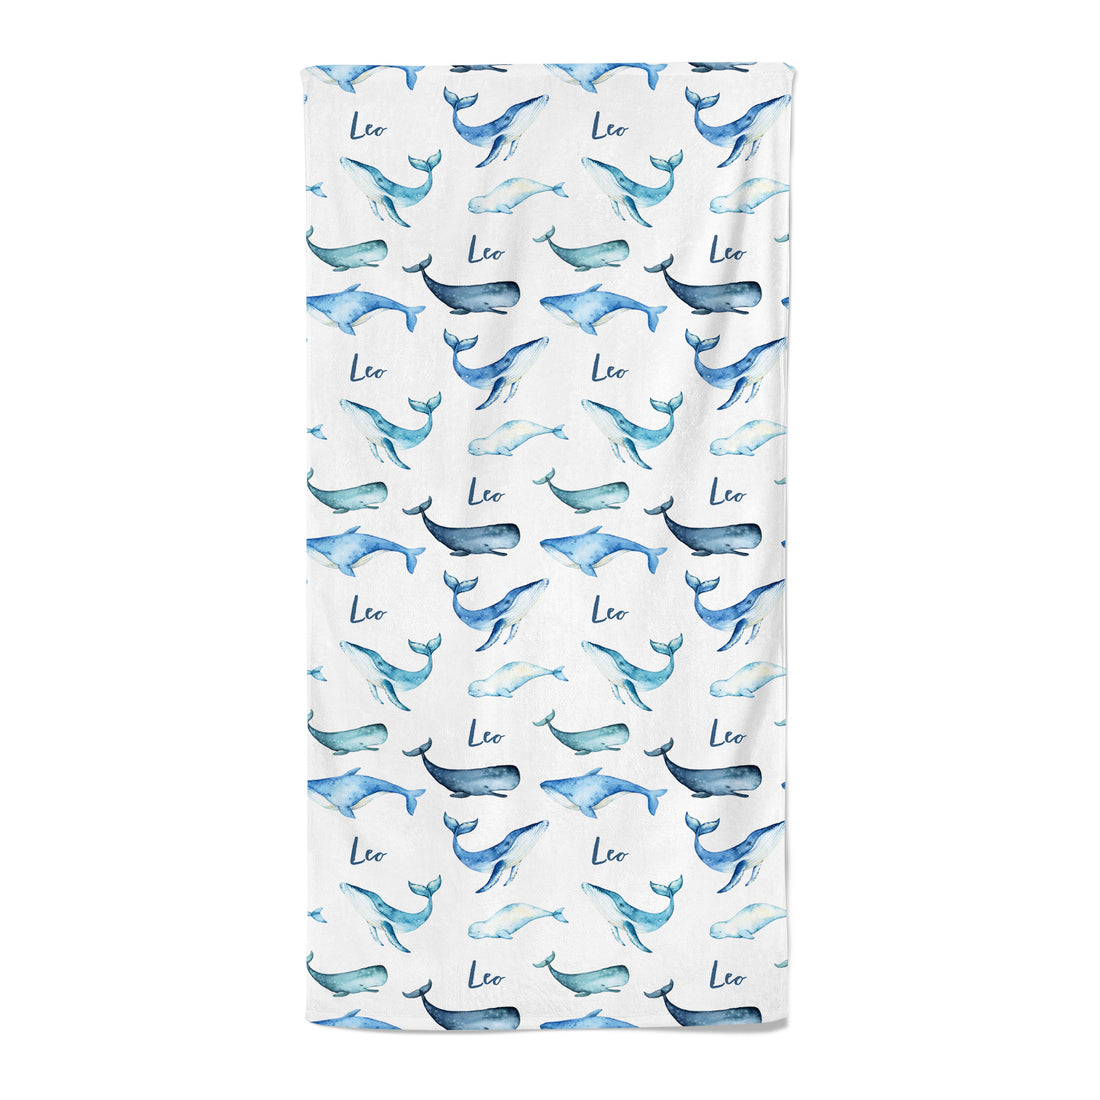 Whales - Personalised Towel